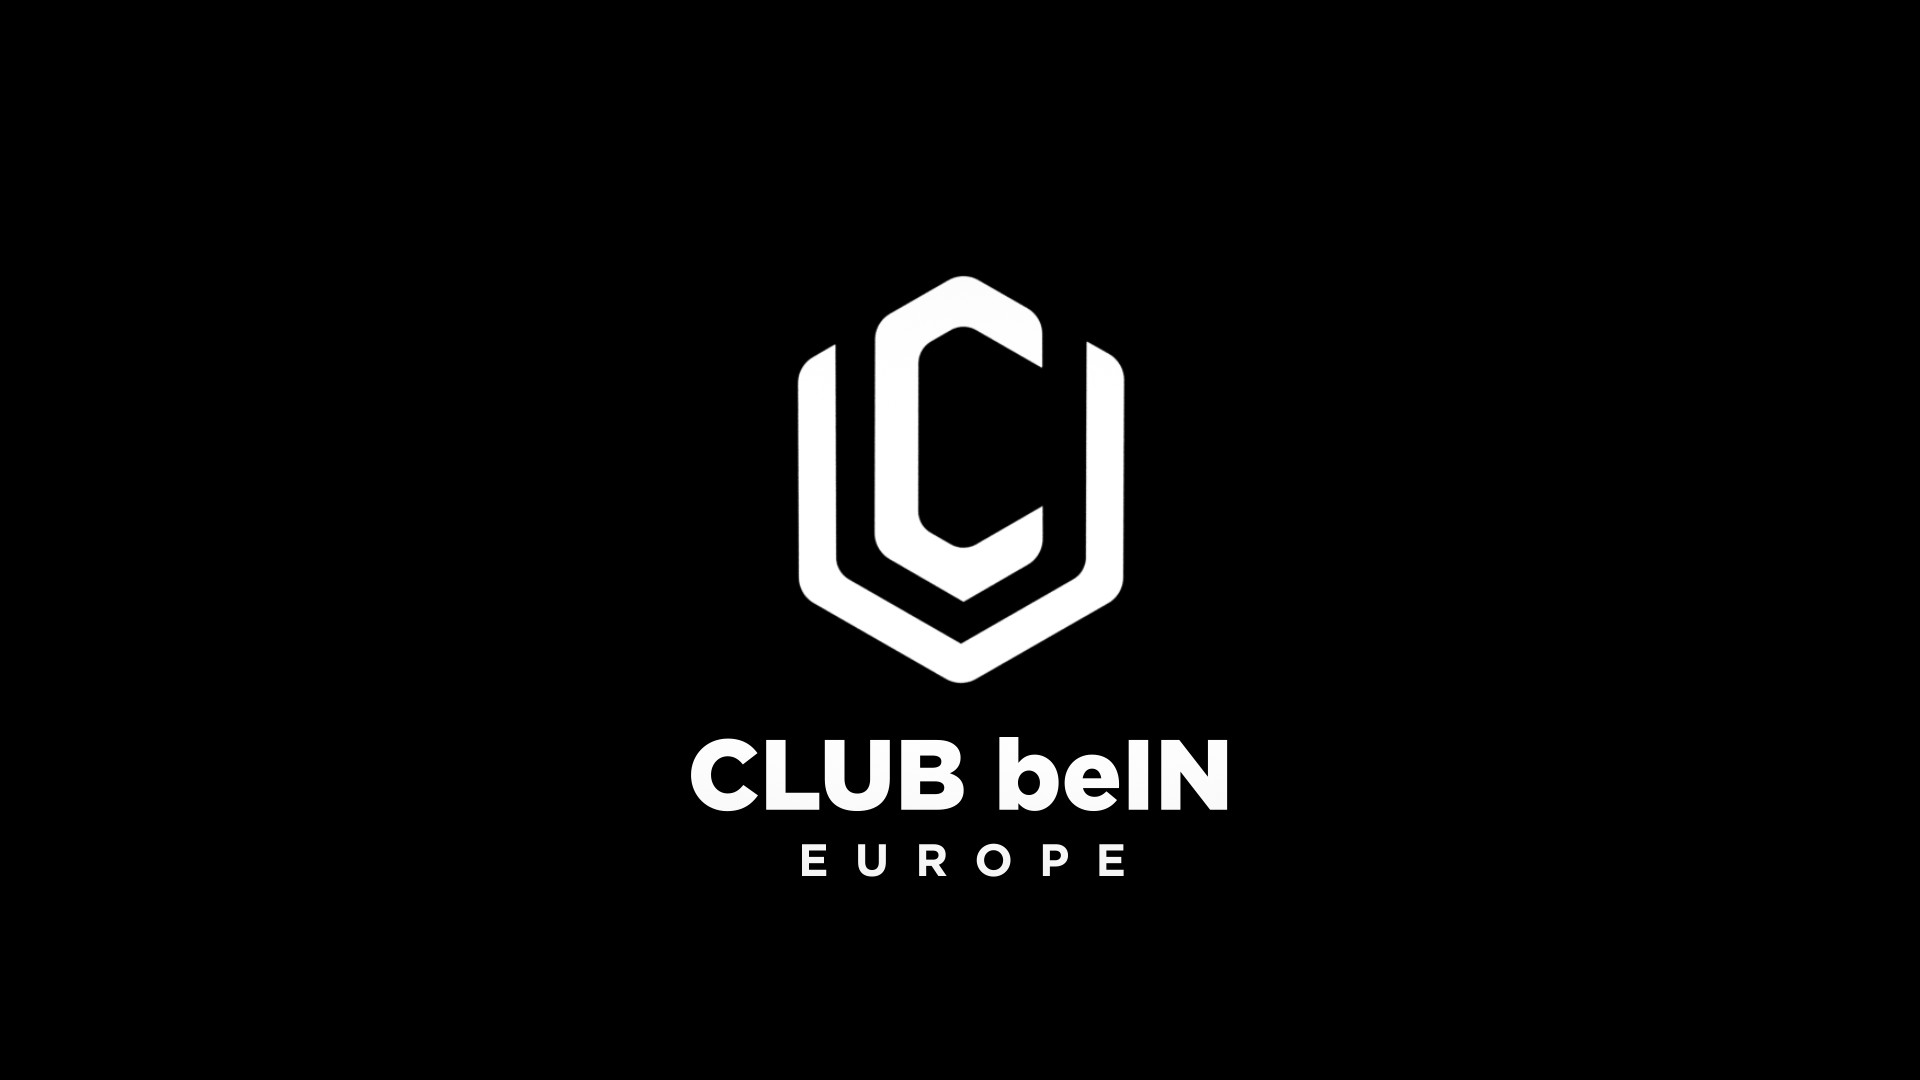 CLUB beIN EUROPE (12/05)